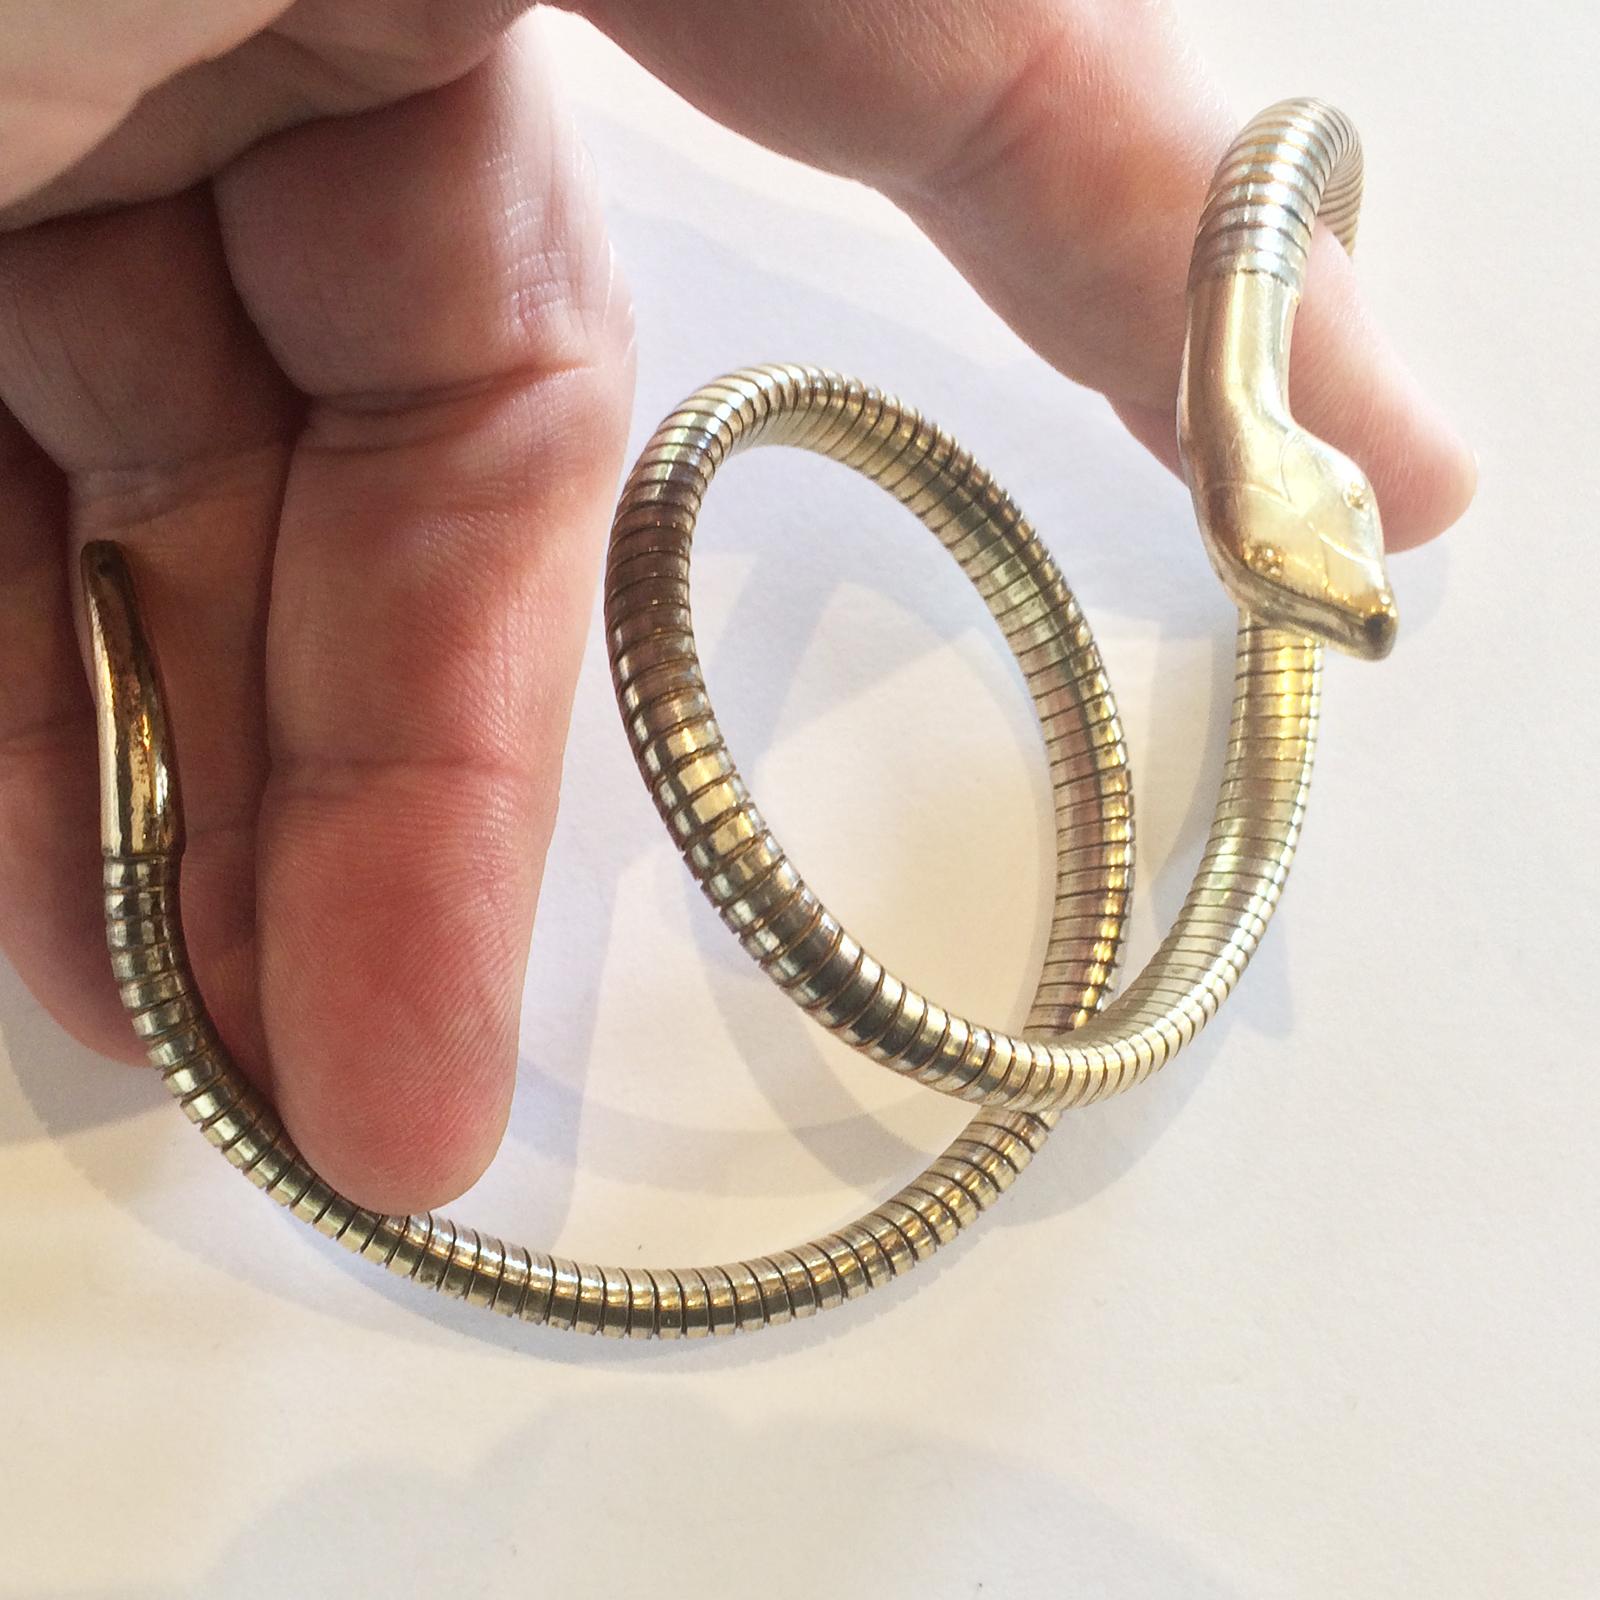 Art Deco 9ct gold snake serpent bangle bracelet (Art déco)